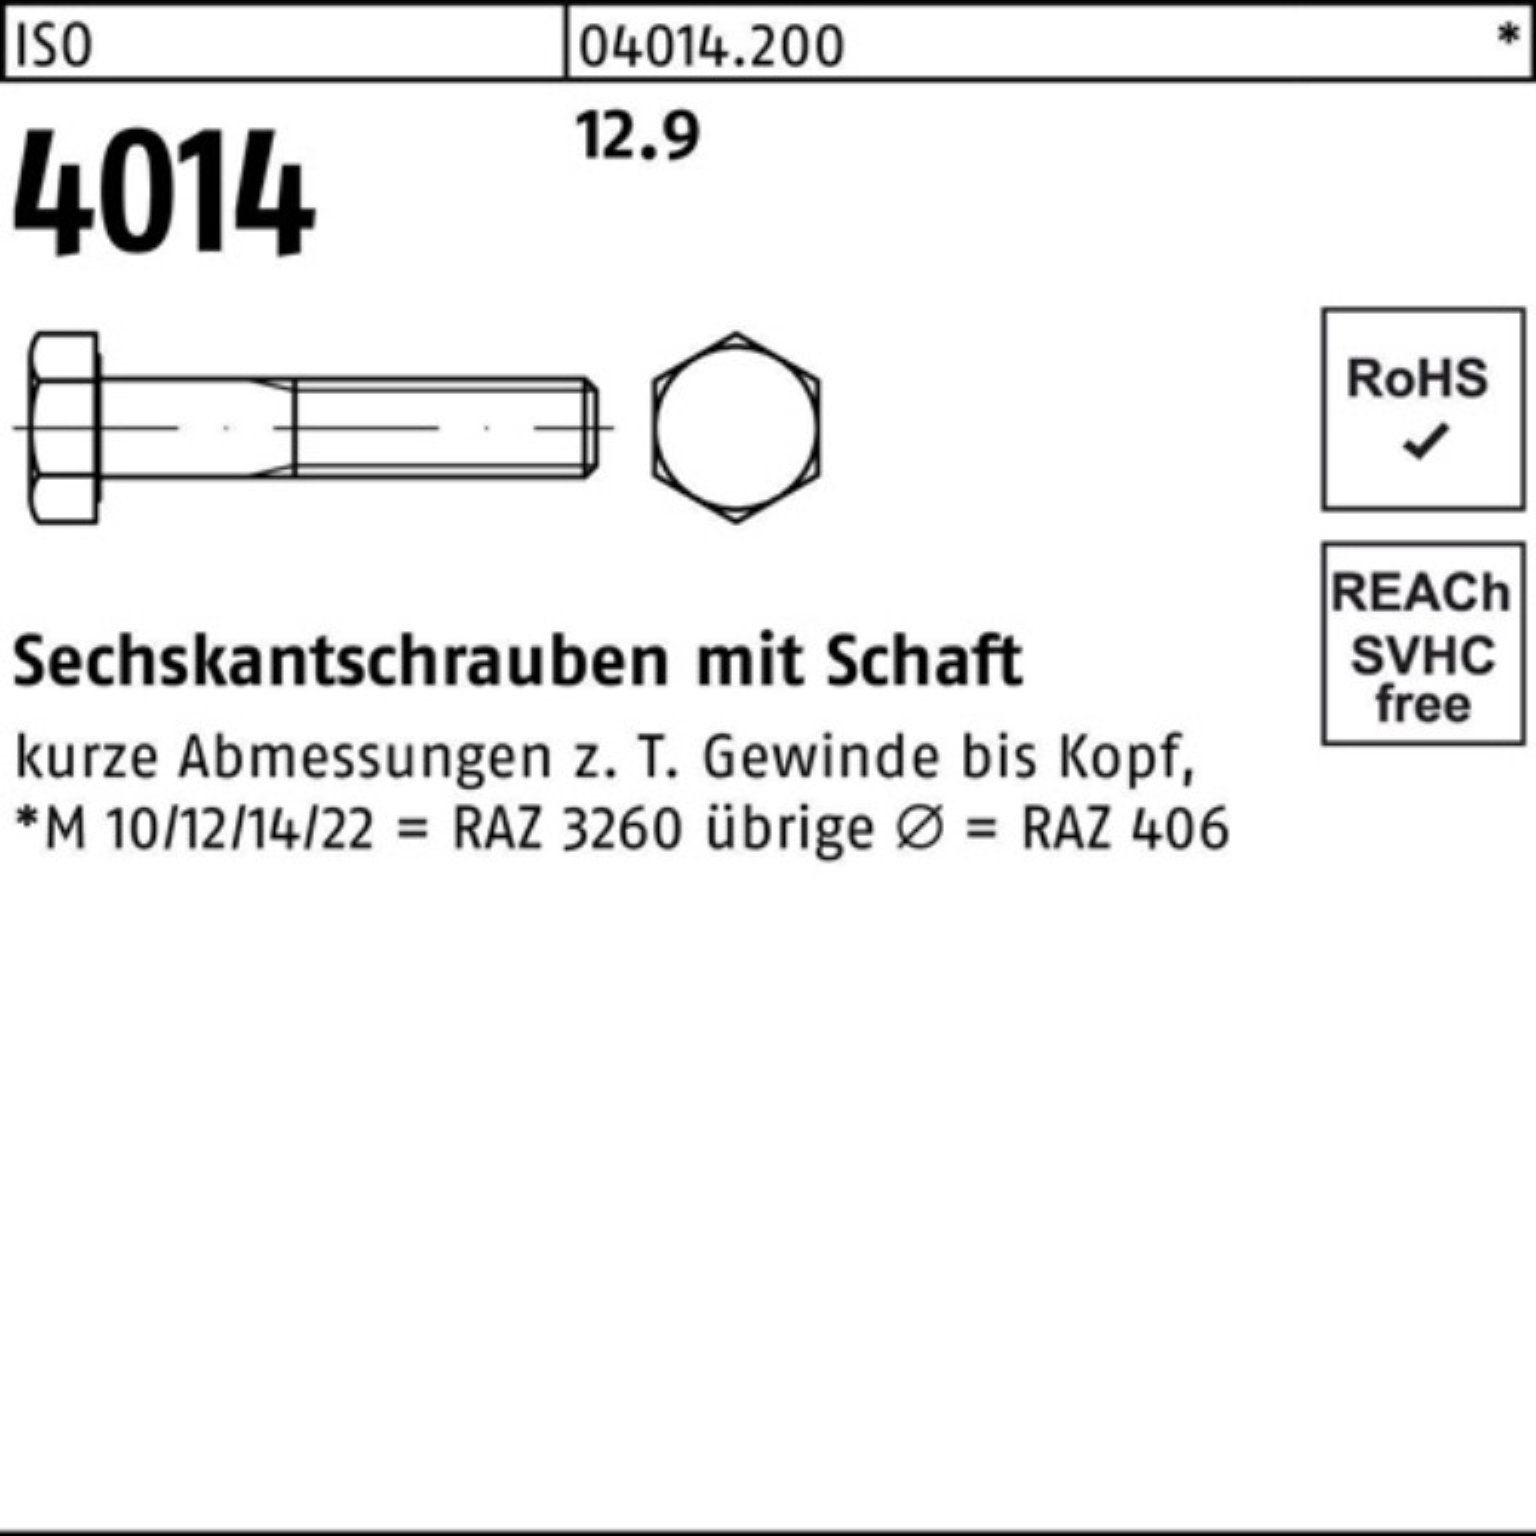 Sechskantschraube Sechskantschraube 50 100er I 4014 ISO 100 Pack Bufab M12x Stück Schaft 12.9